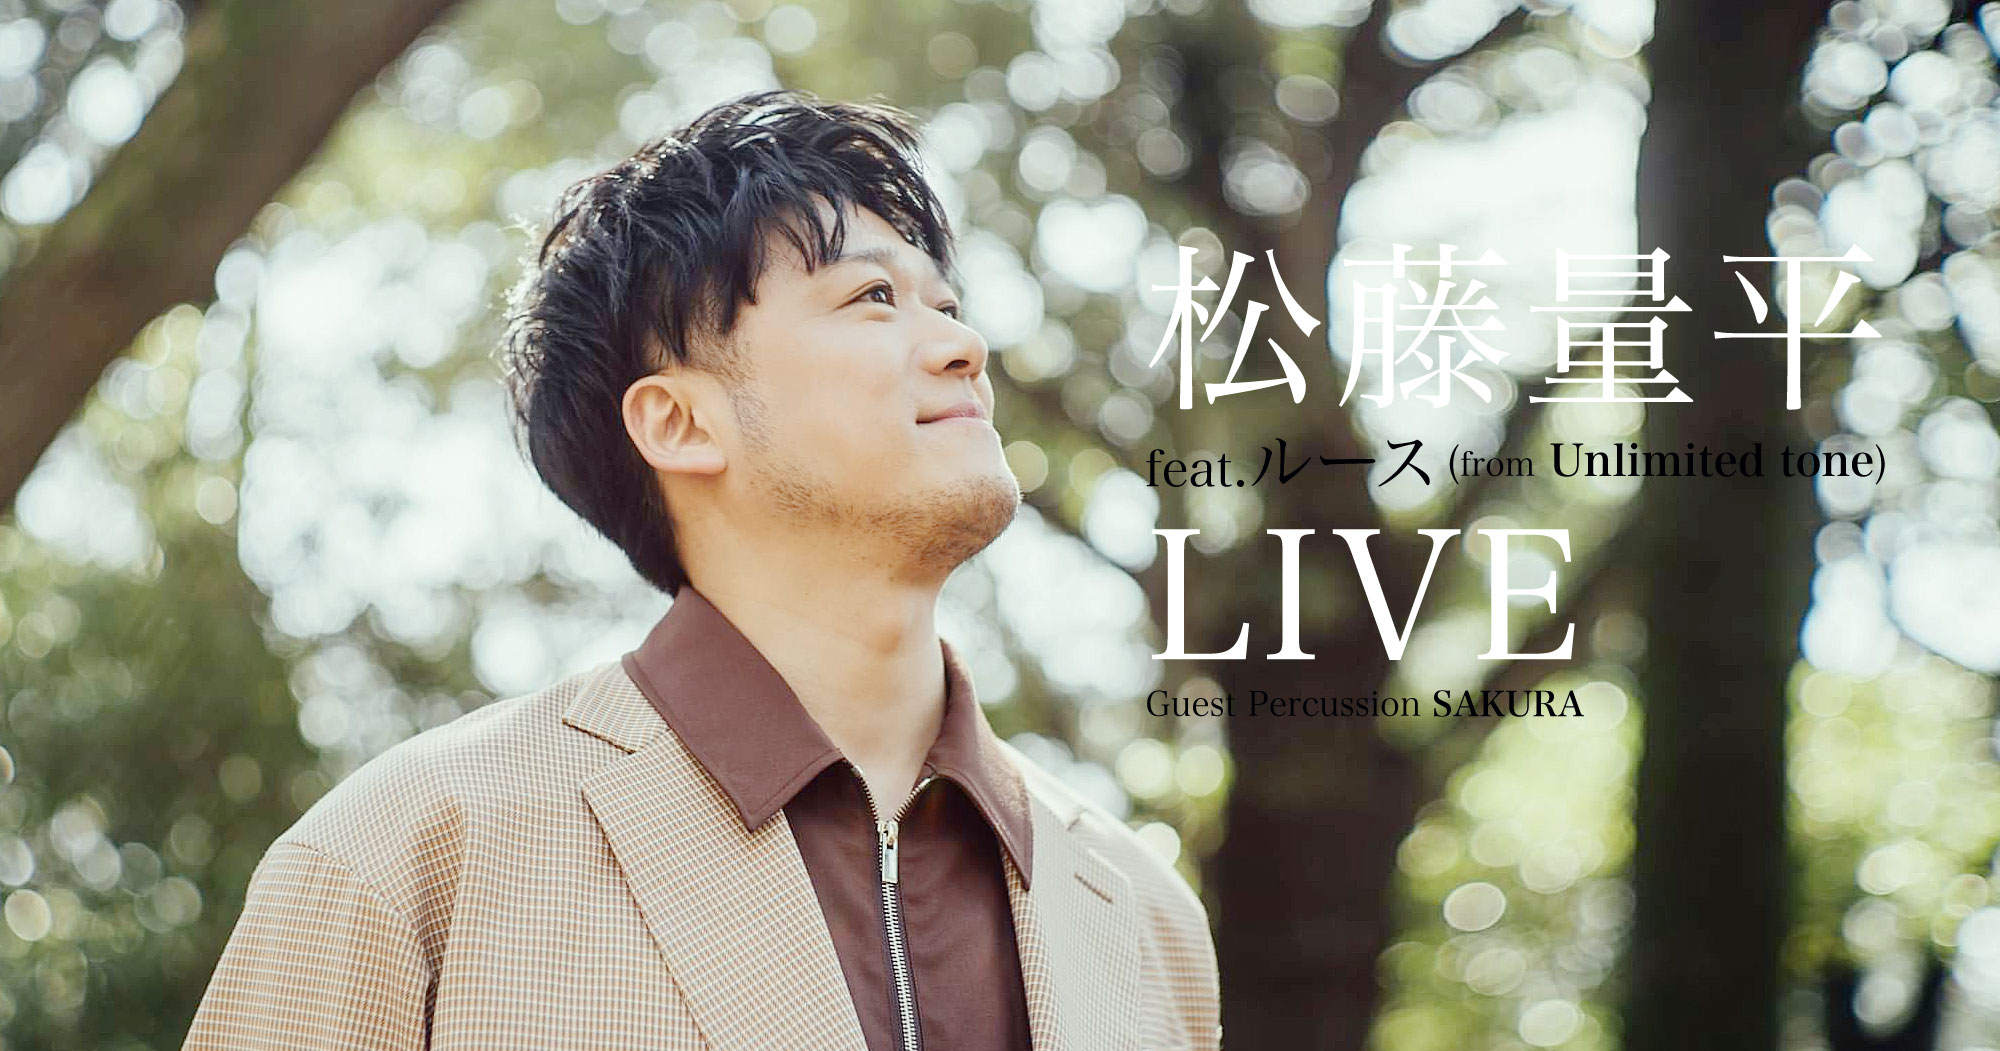 松藤量平 feat. ルース (from Unlimited tone) LIVE